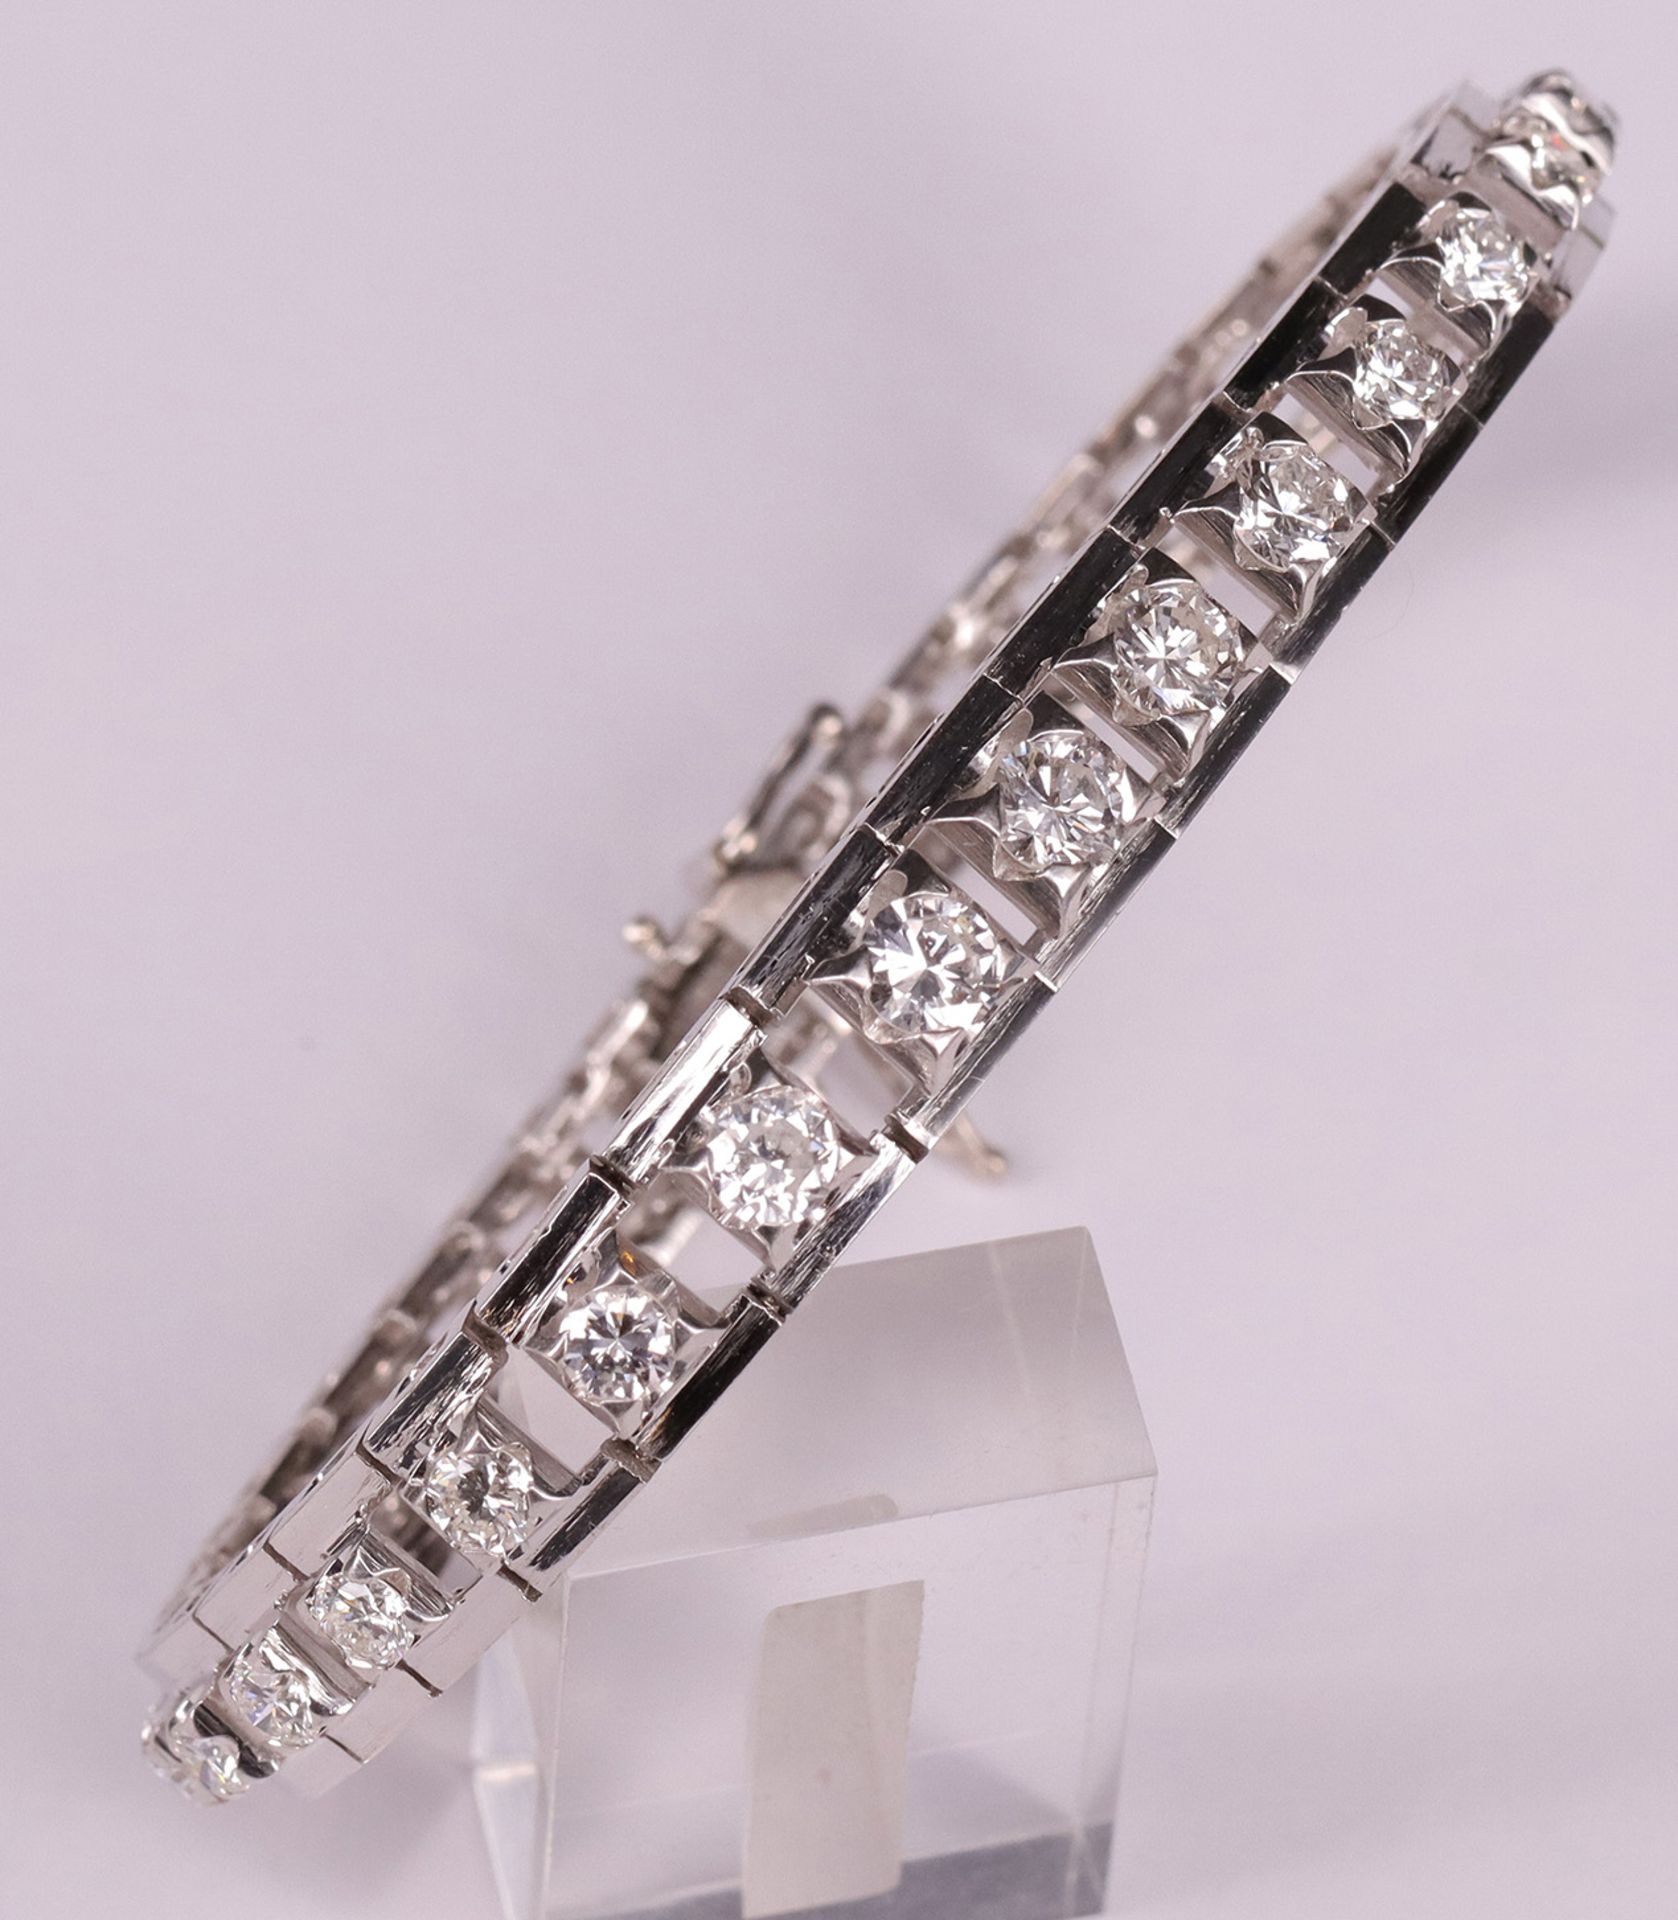 Armband mit Diamanten, 585er WG, mit 34 Brillanten, ca. 6 ct, davon die größten mit je 5 mm D. - Bild 3 aus 3